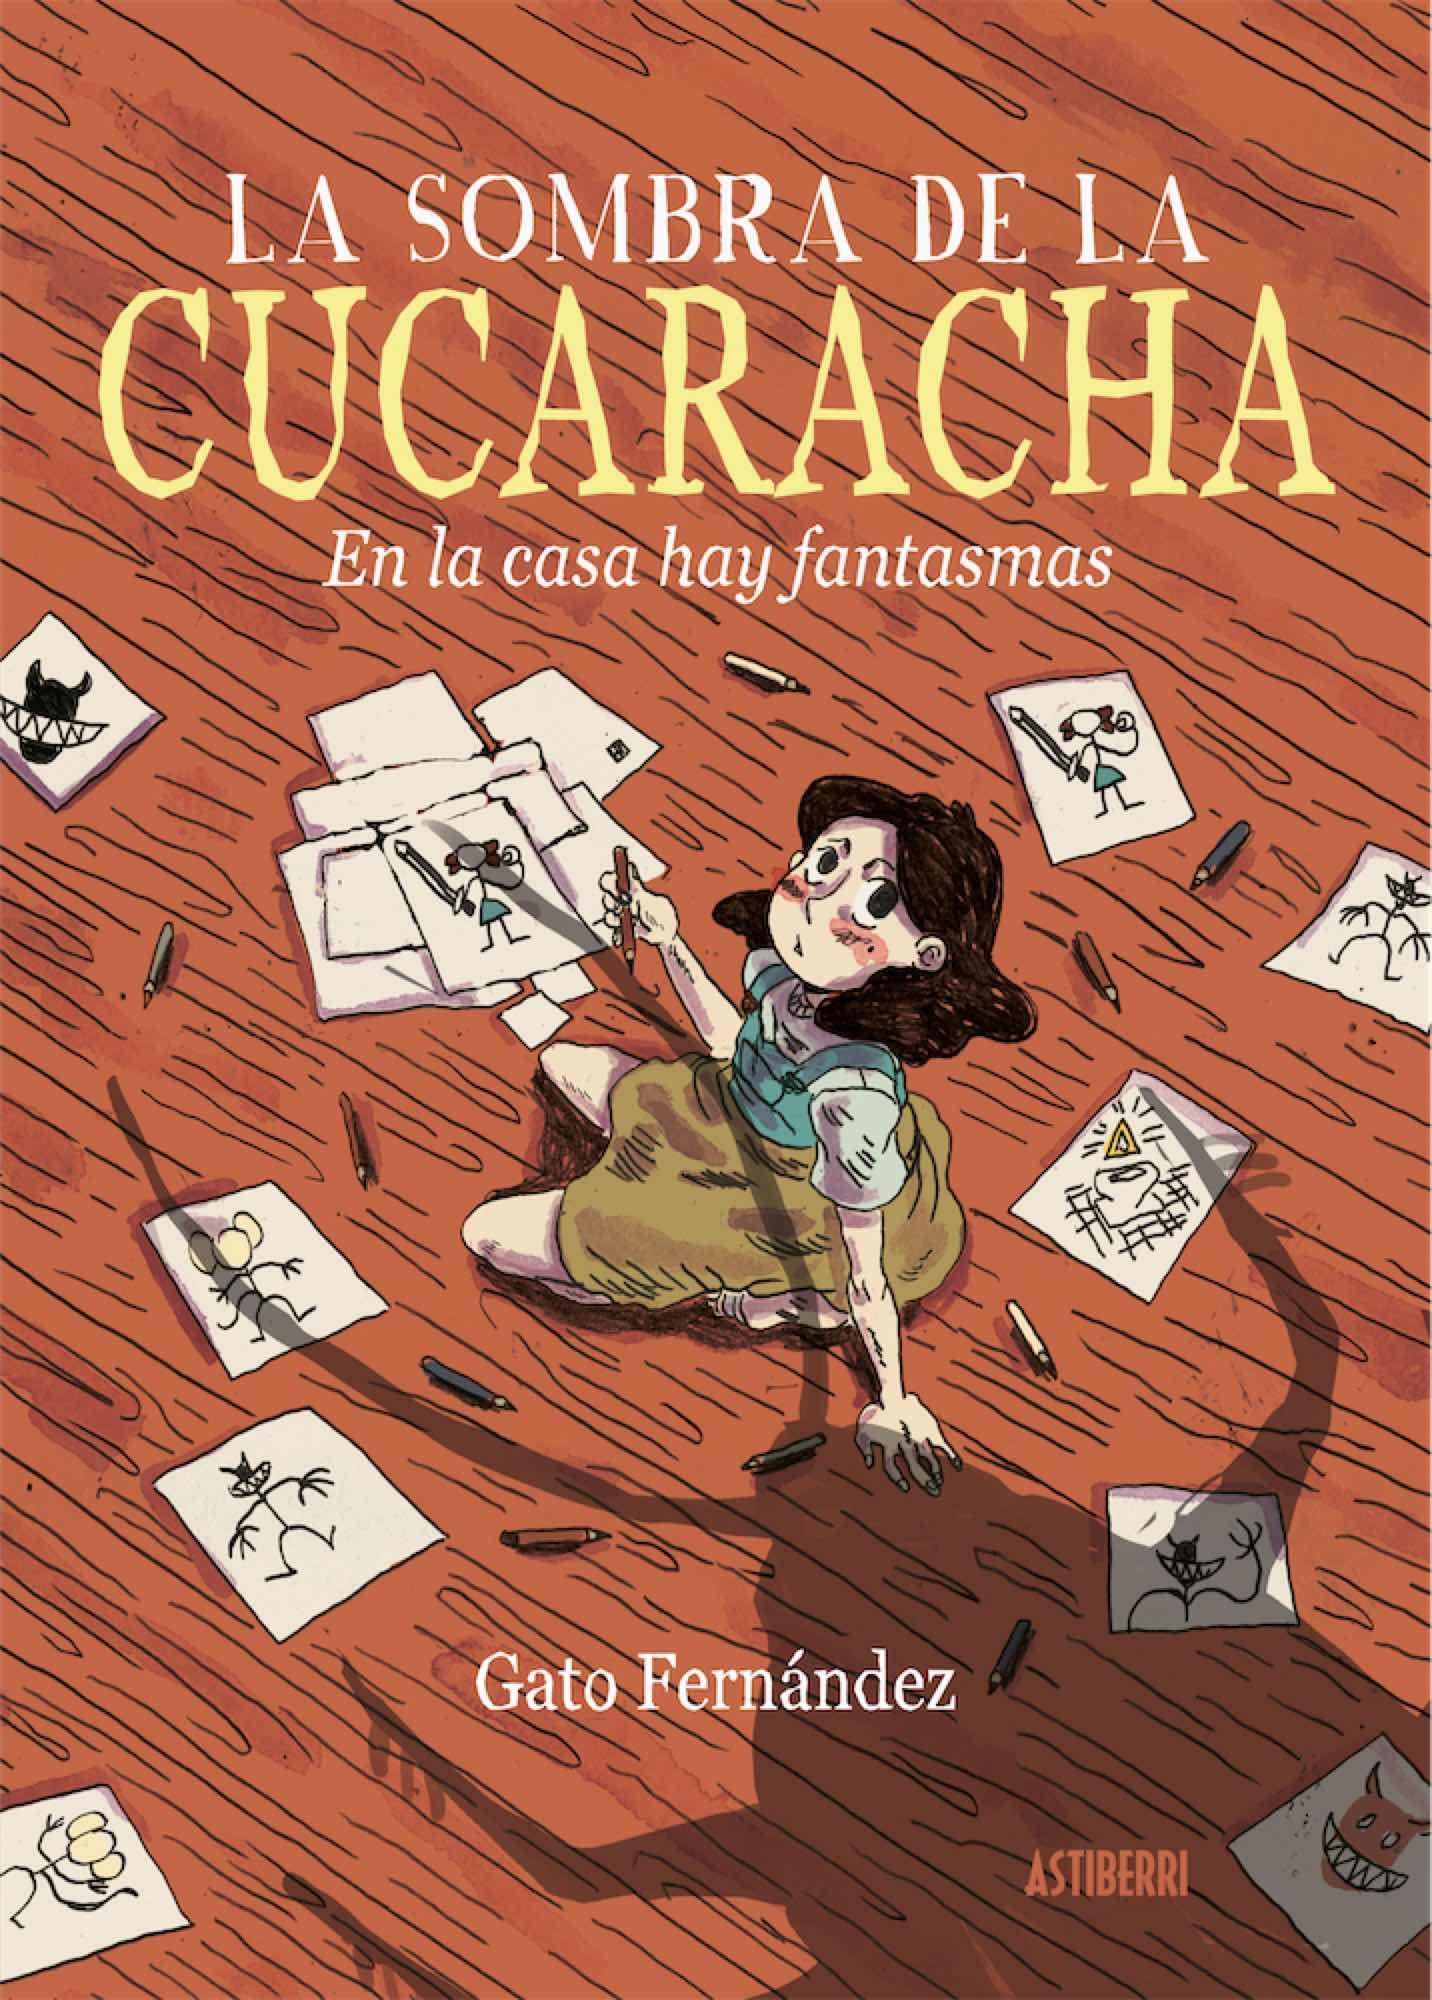 Zenda recomienda: La sombra de la cucaracha, de Gato Fernández